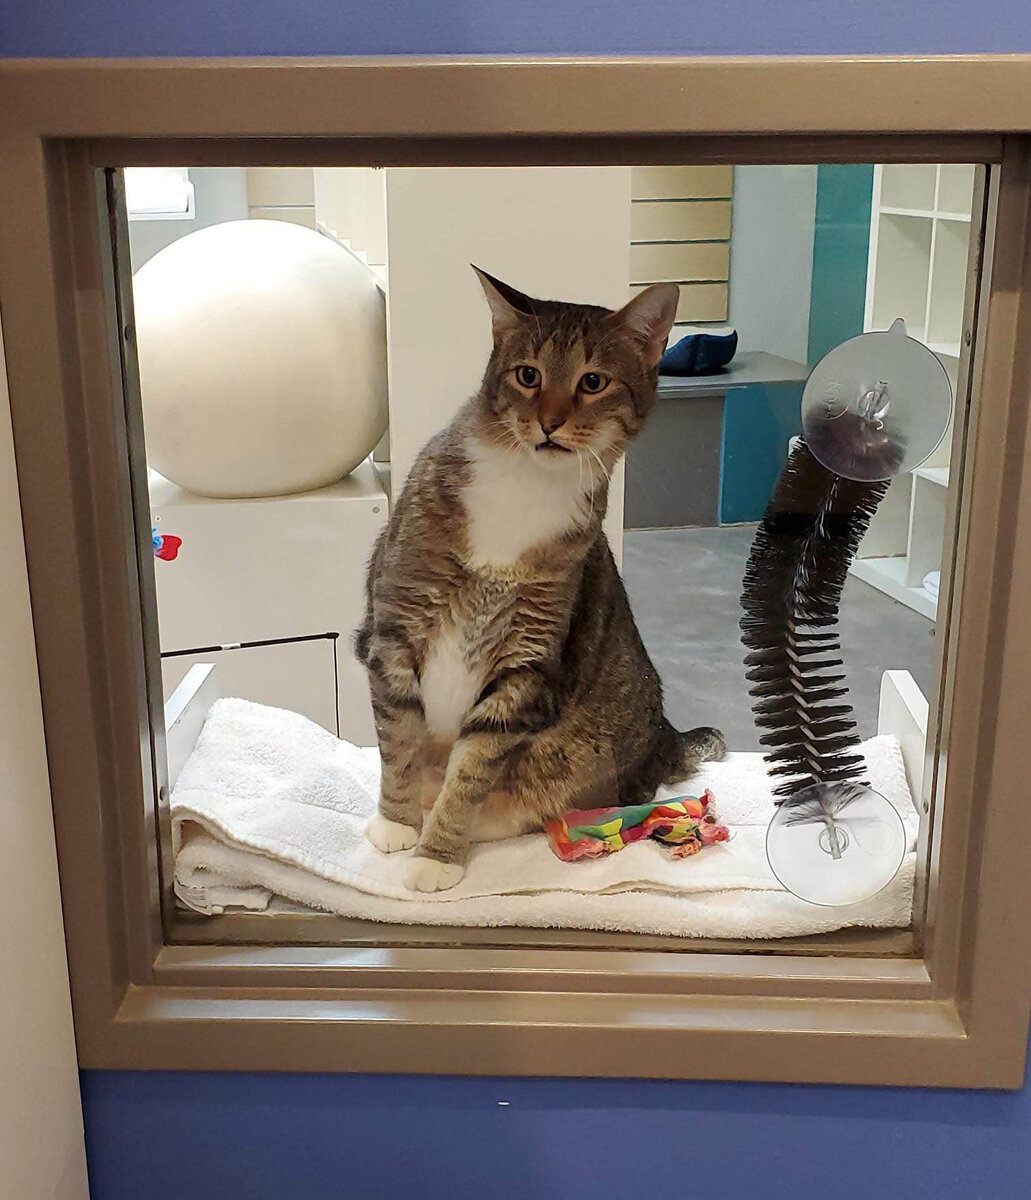 В американском приюте в Хьюстоне живет кот по имени Квилти, у которого, по словам волонтеров, обостренное «чувство справедливости»: «Квилти любит выпускать кошек из большой комнаты.-2